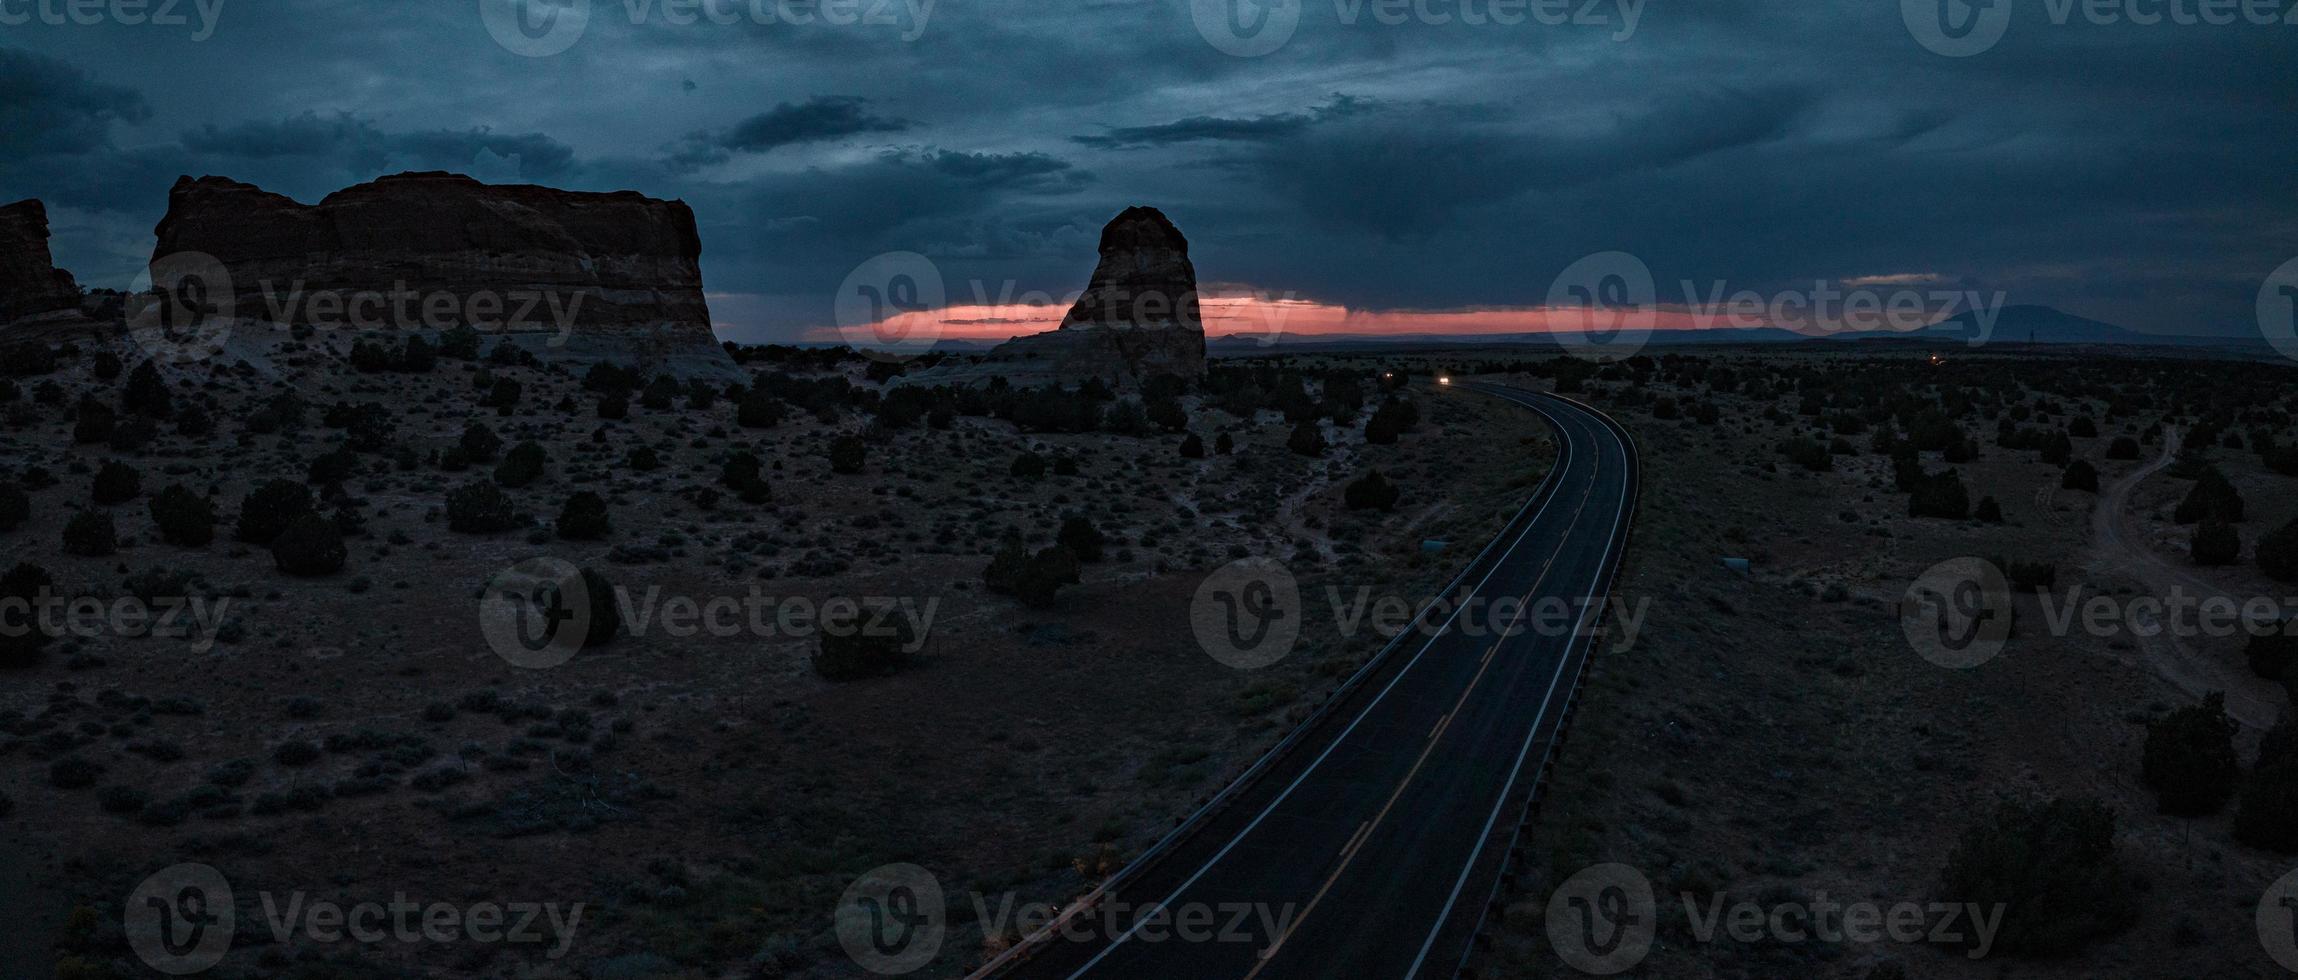 vista infinita do deserto do arizona, eua. rochas vermelhas, sem vida por milhas. foto